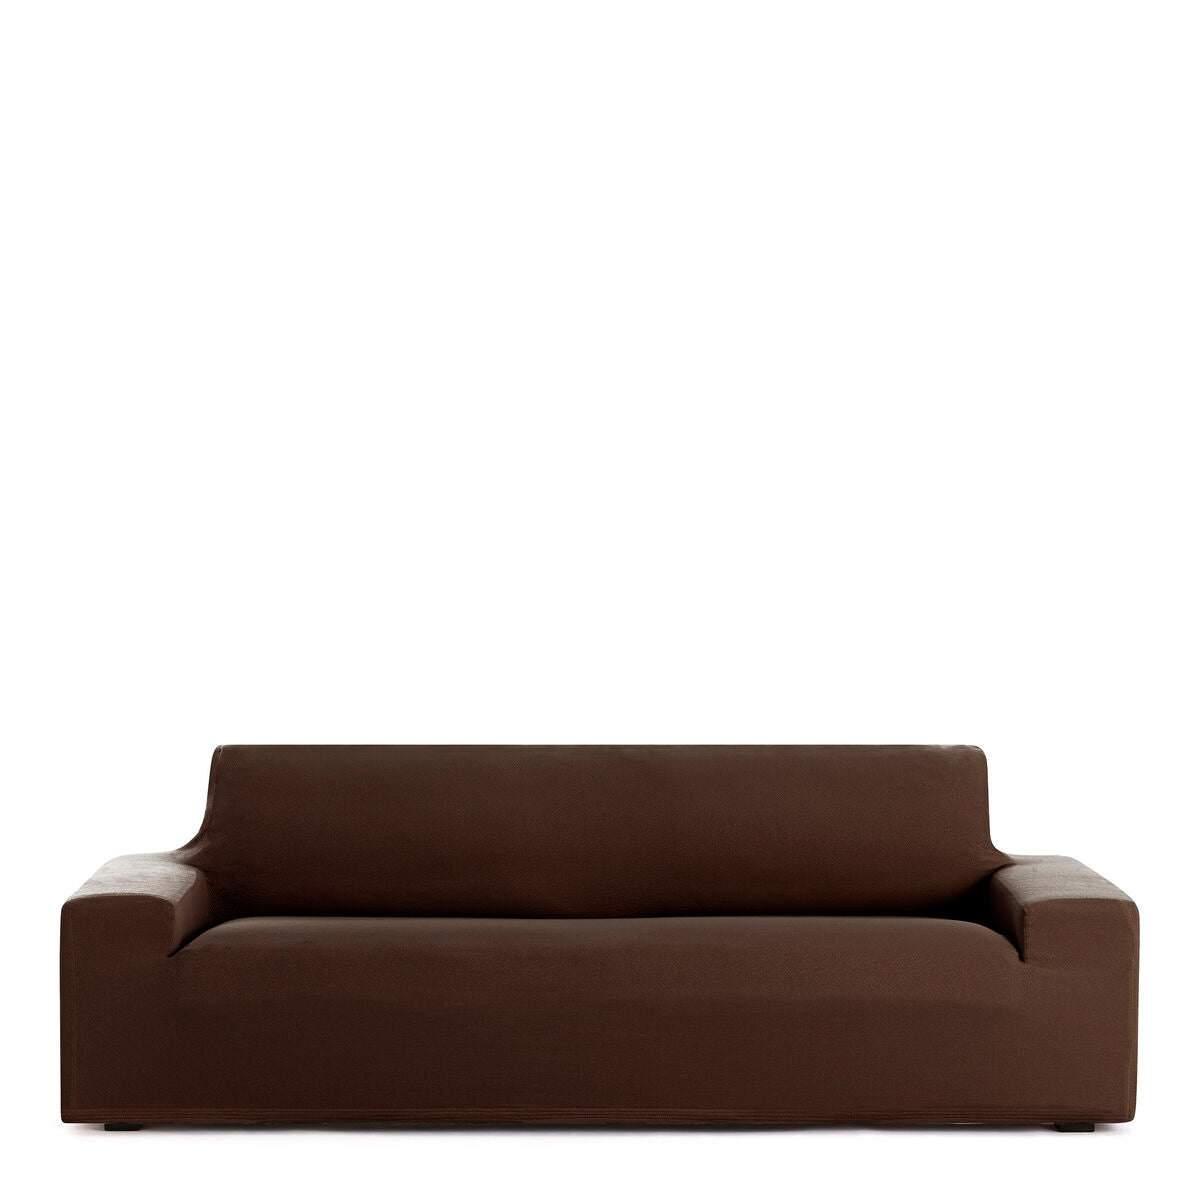 Copertina di divano marrone Eysa 70 x 110 x 170 cm